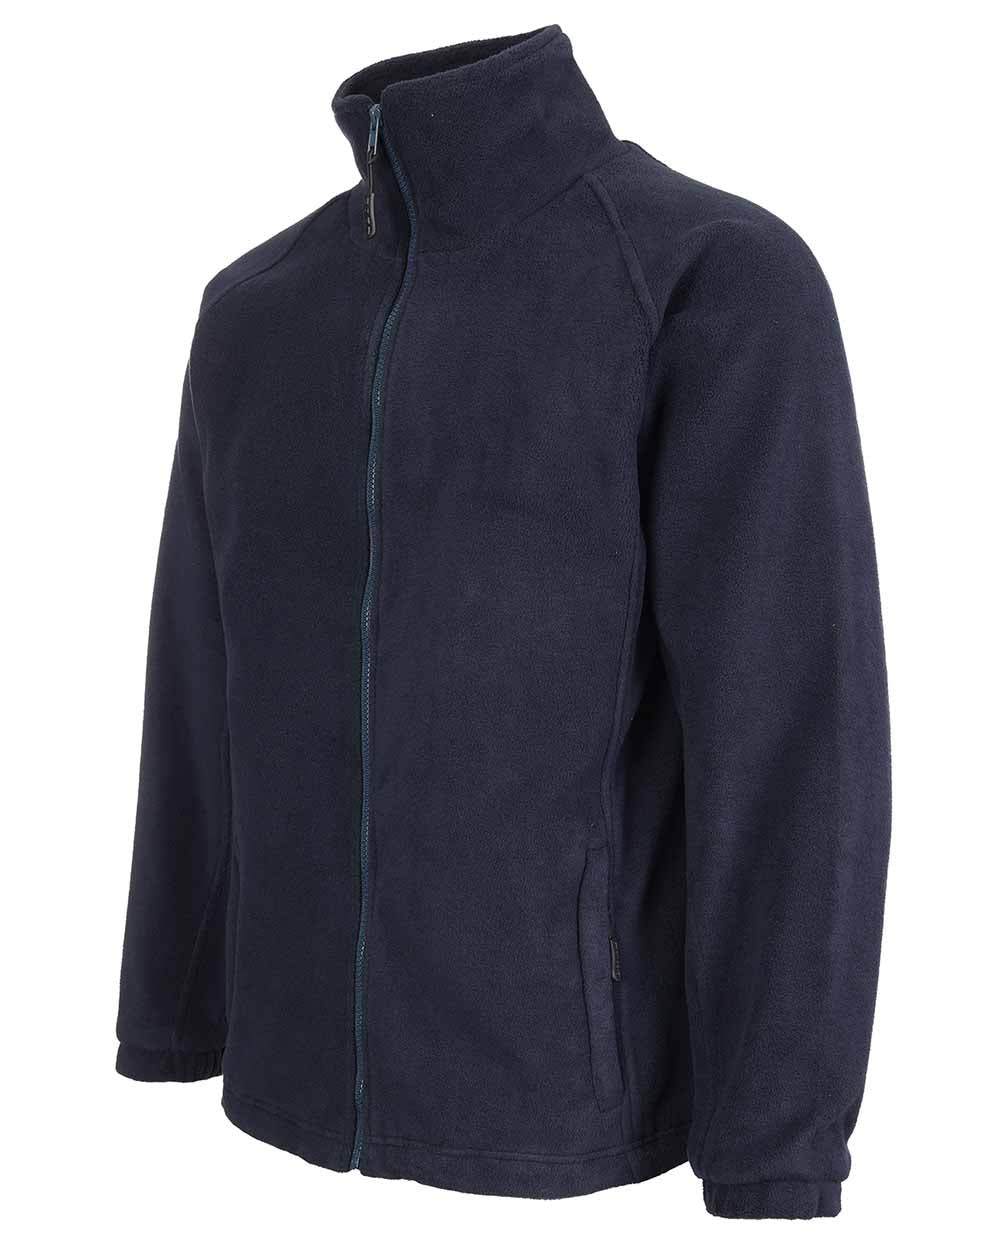 Full zip Fort Lomond Fleece Jacket 